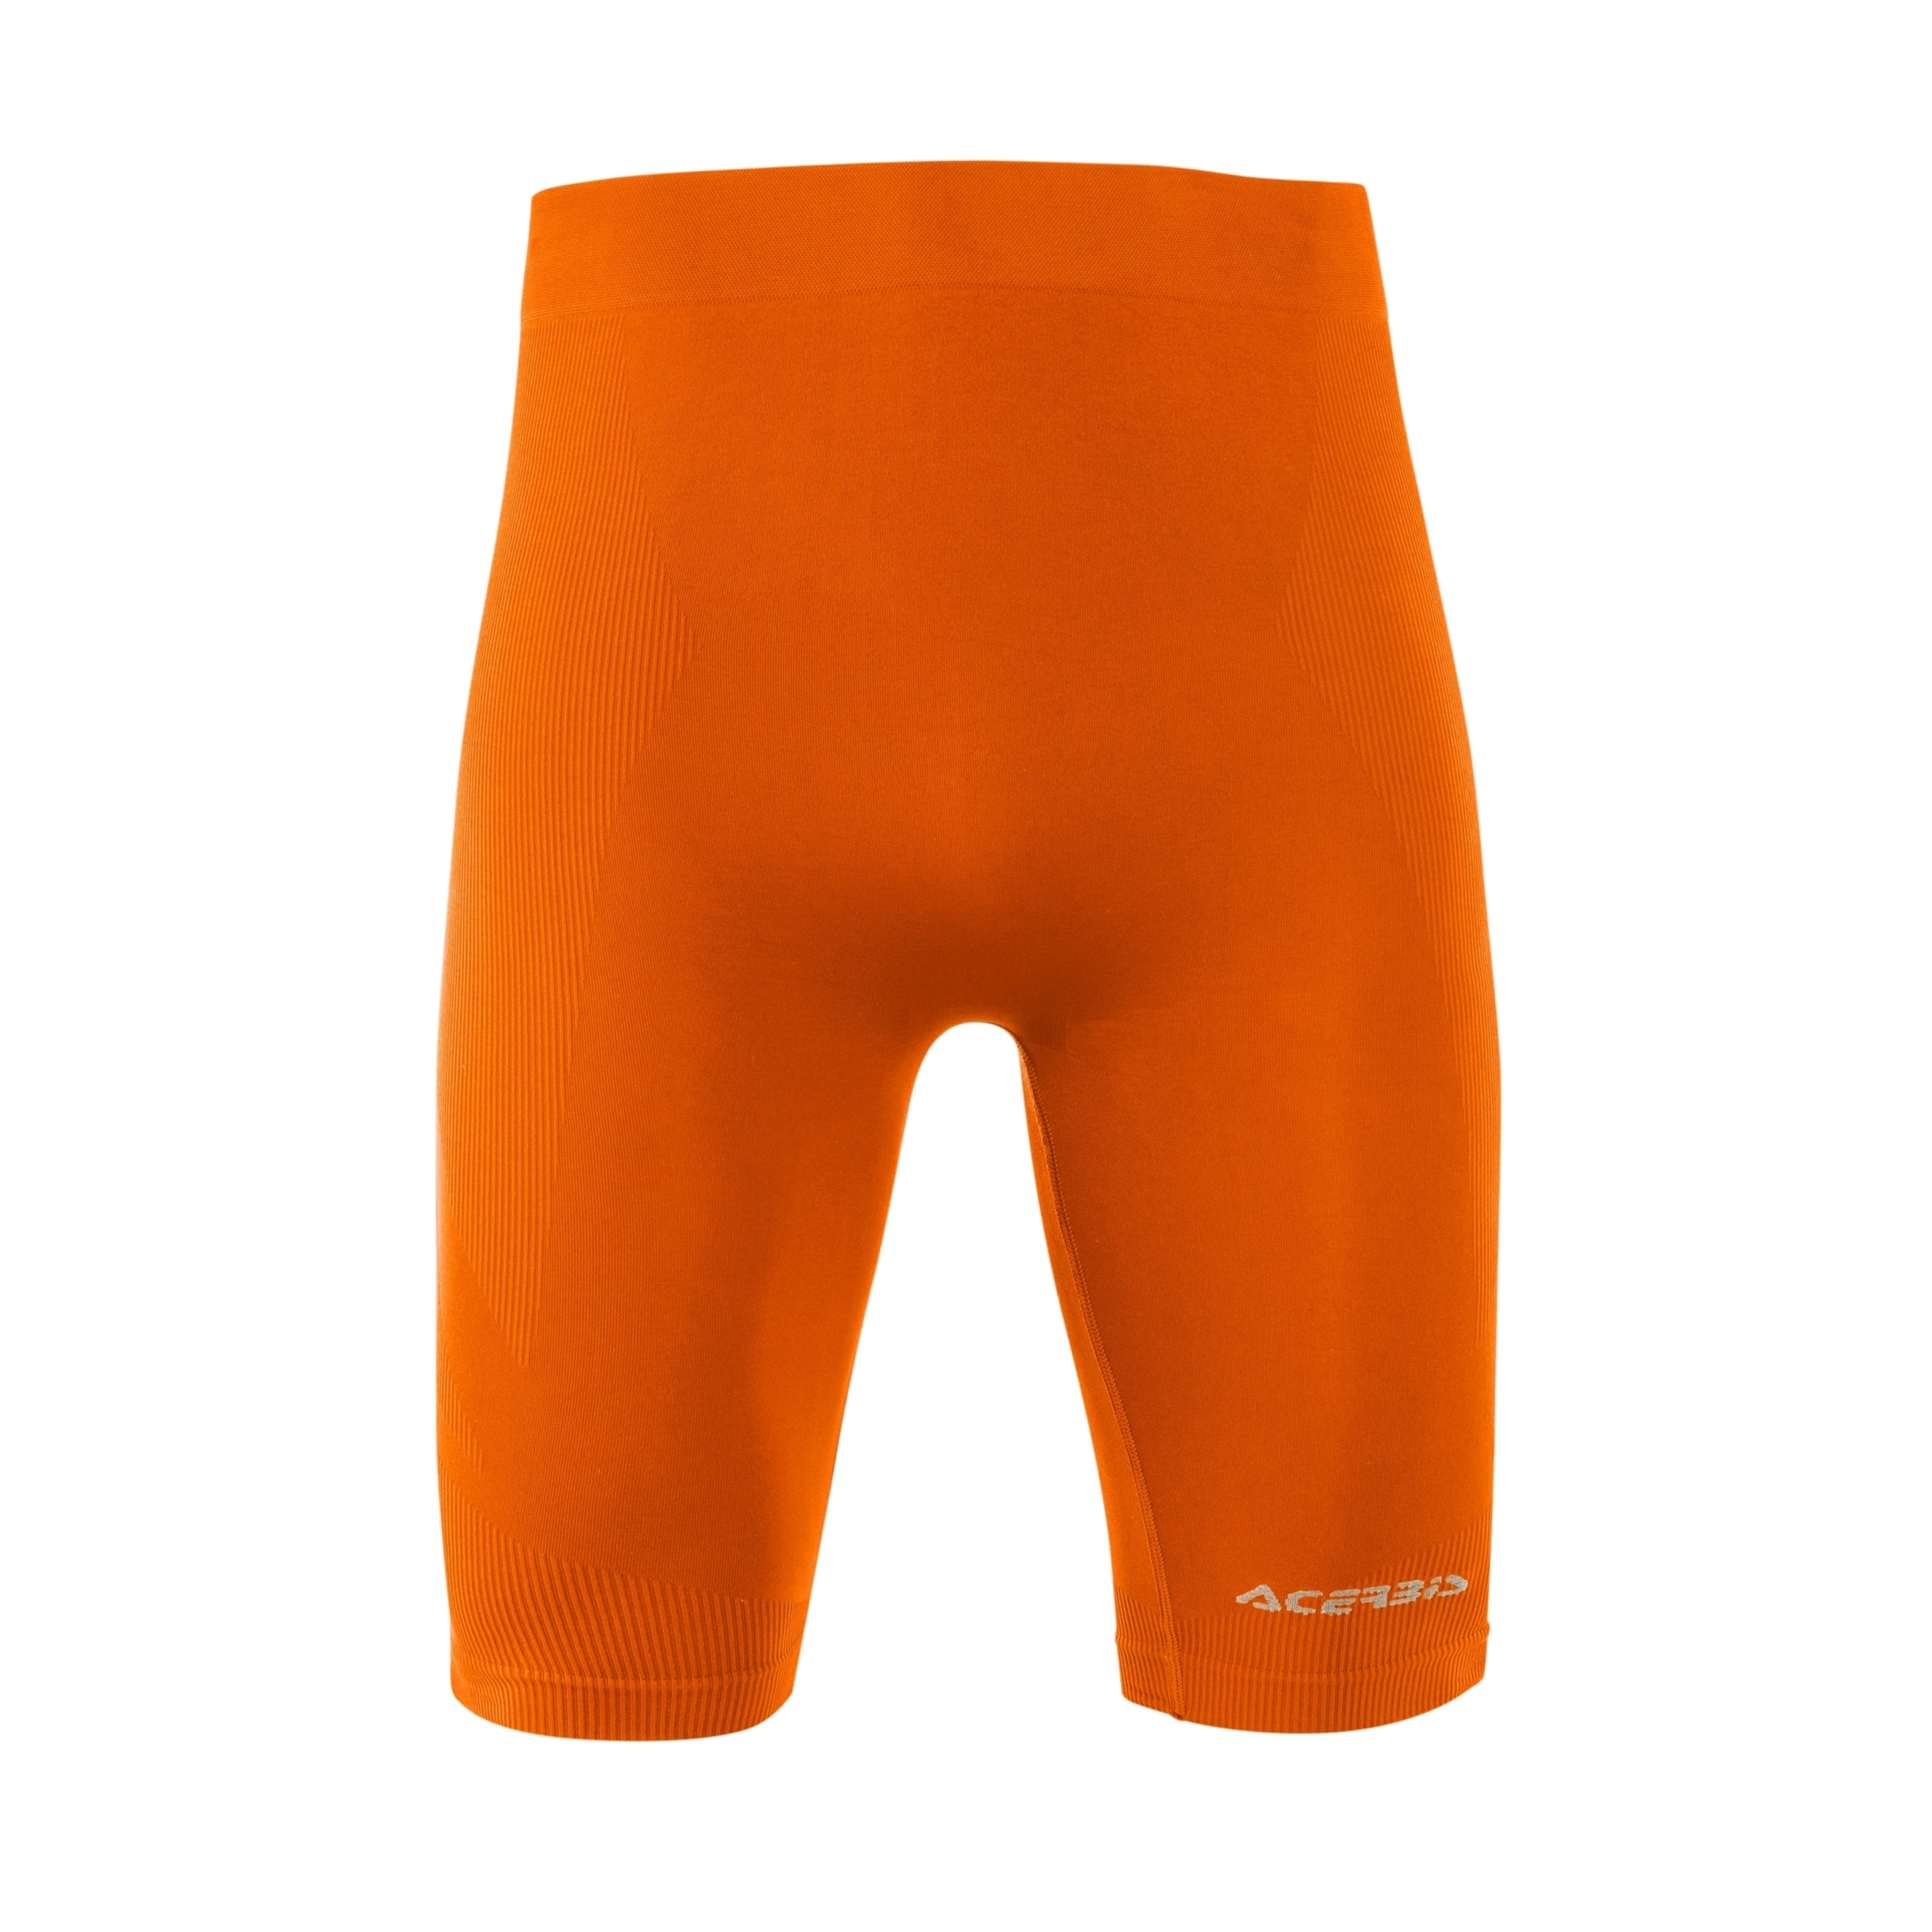 Pantalón Acerbis Interior Evo - naranja - 